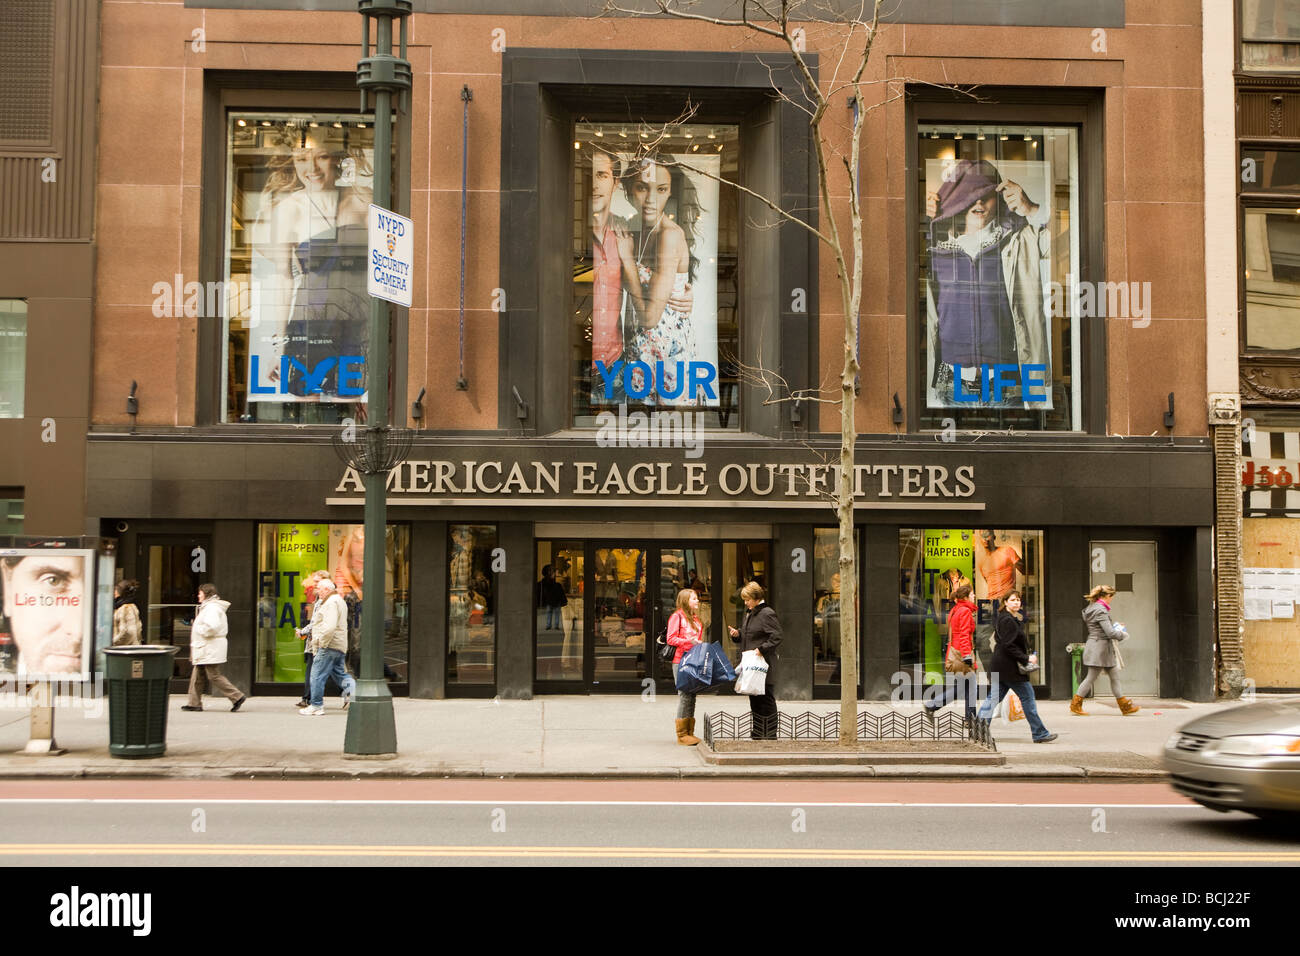 34Th Street tiene muchas tiendas de ropa catering en la cultura pop americana Fotografía de Alamy